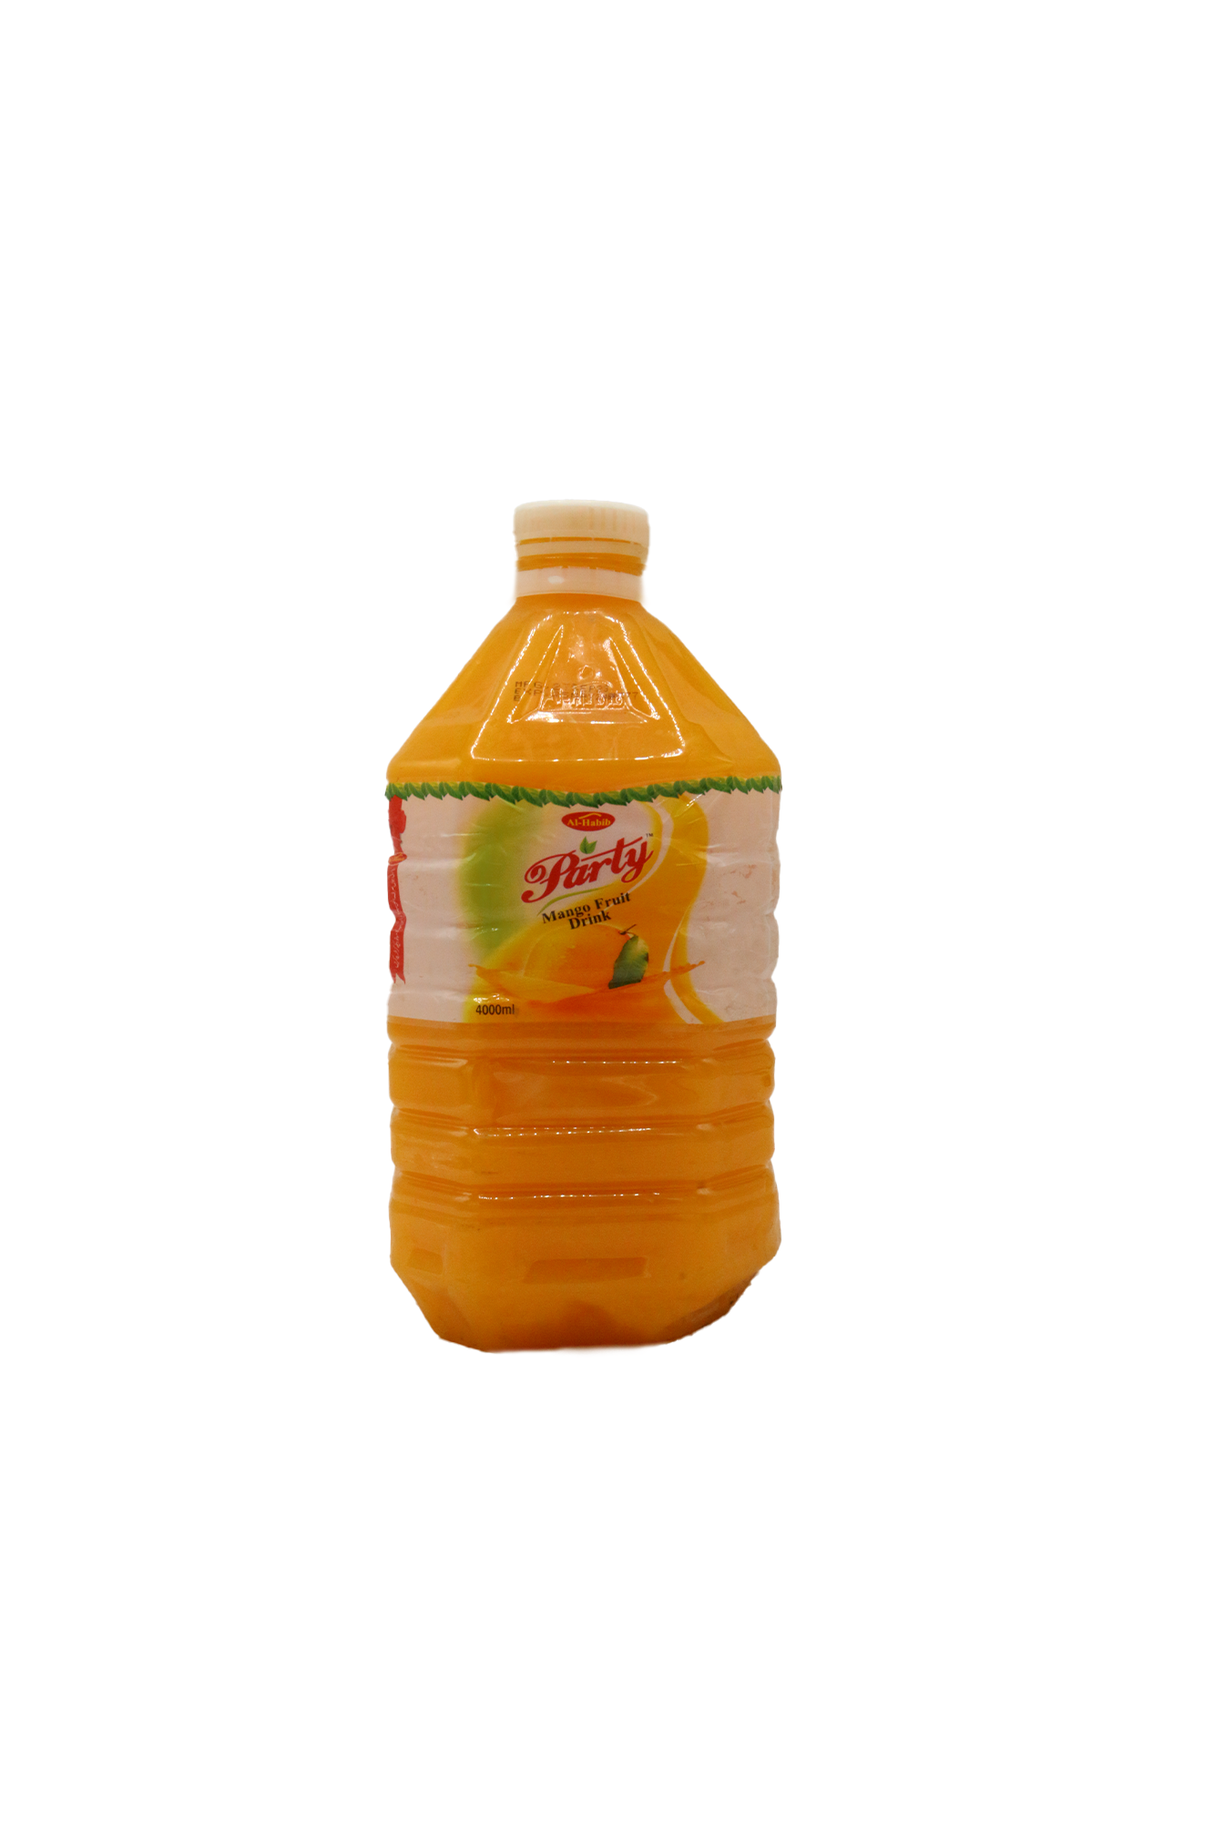 al habib party juice mango 4l